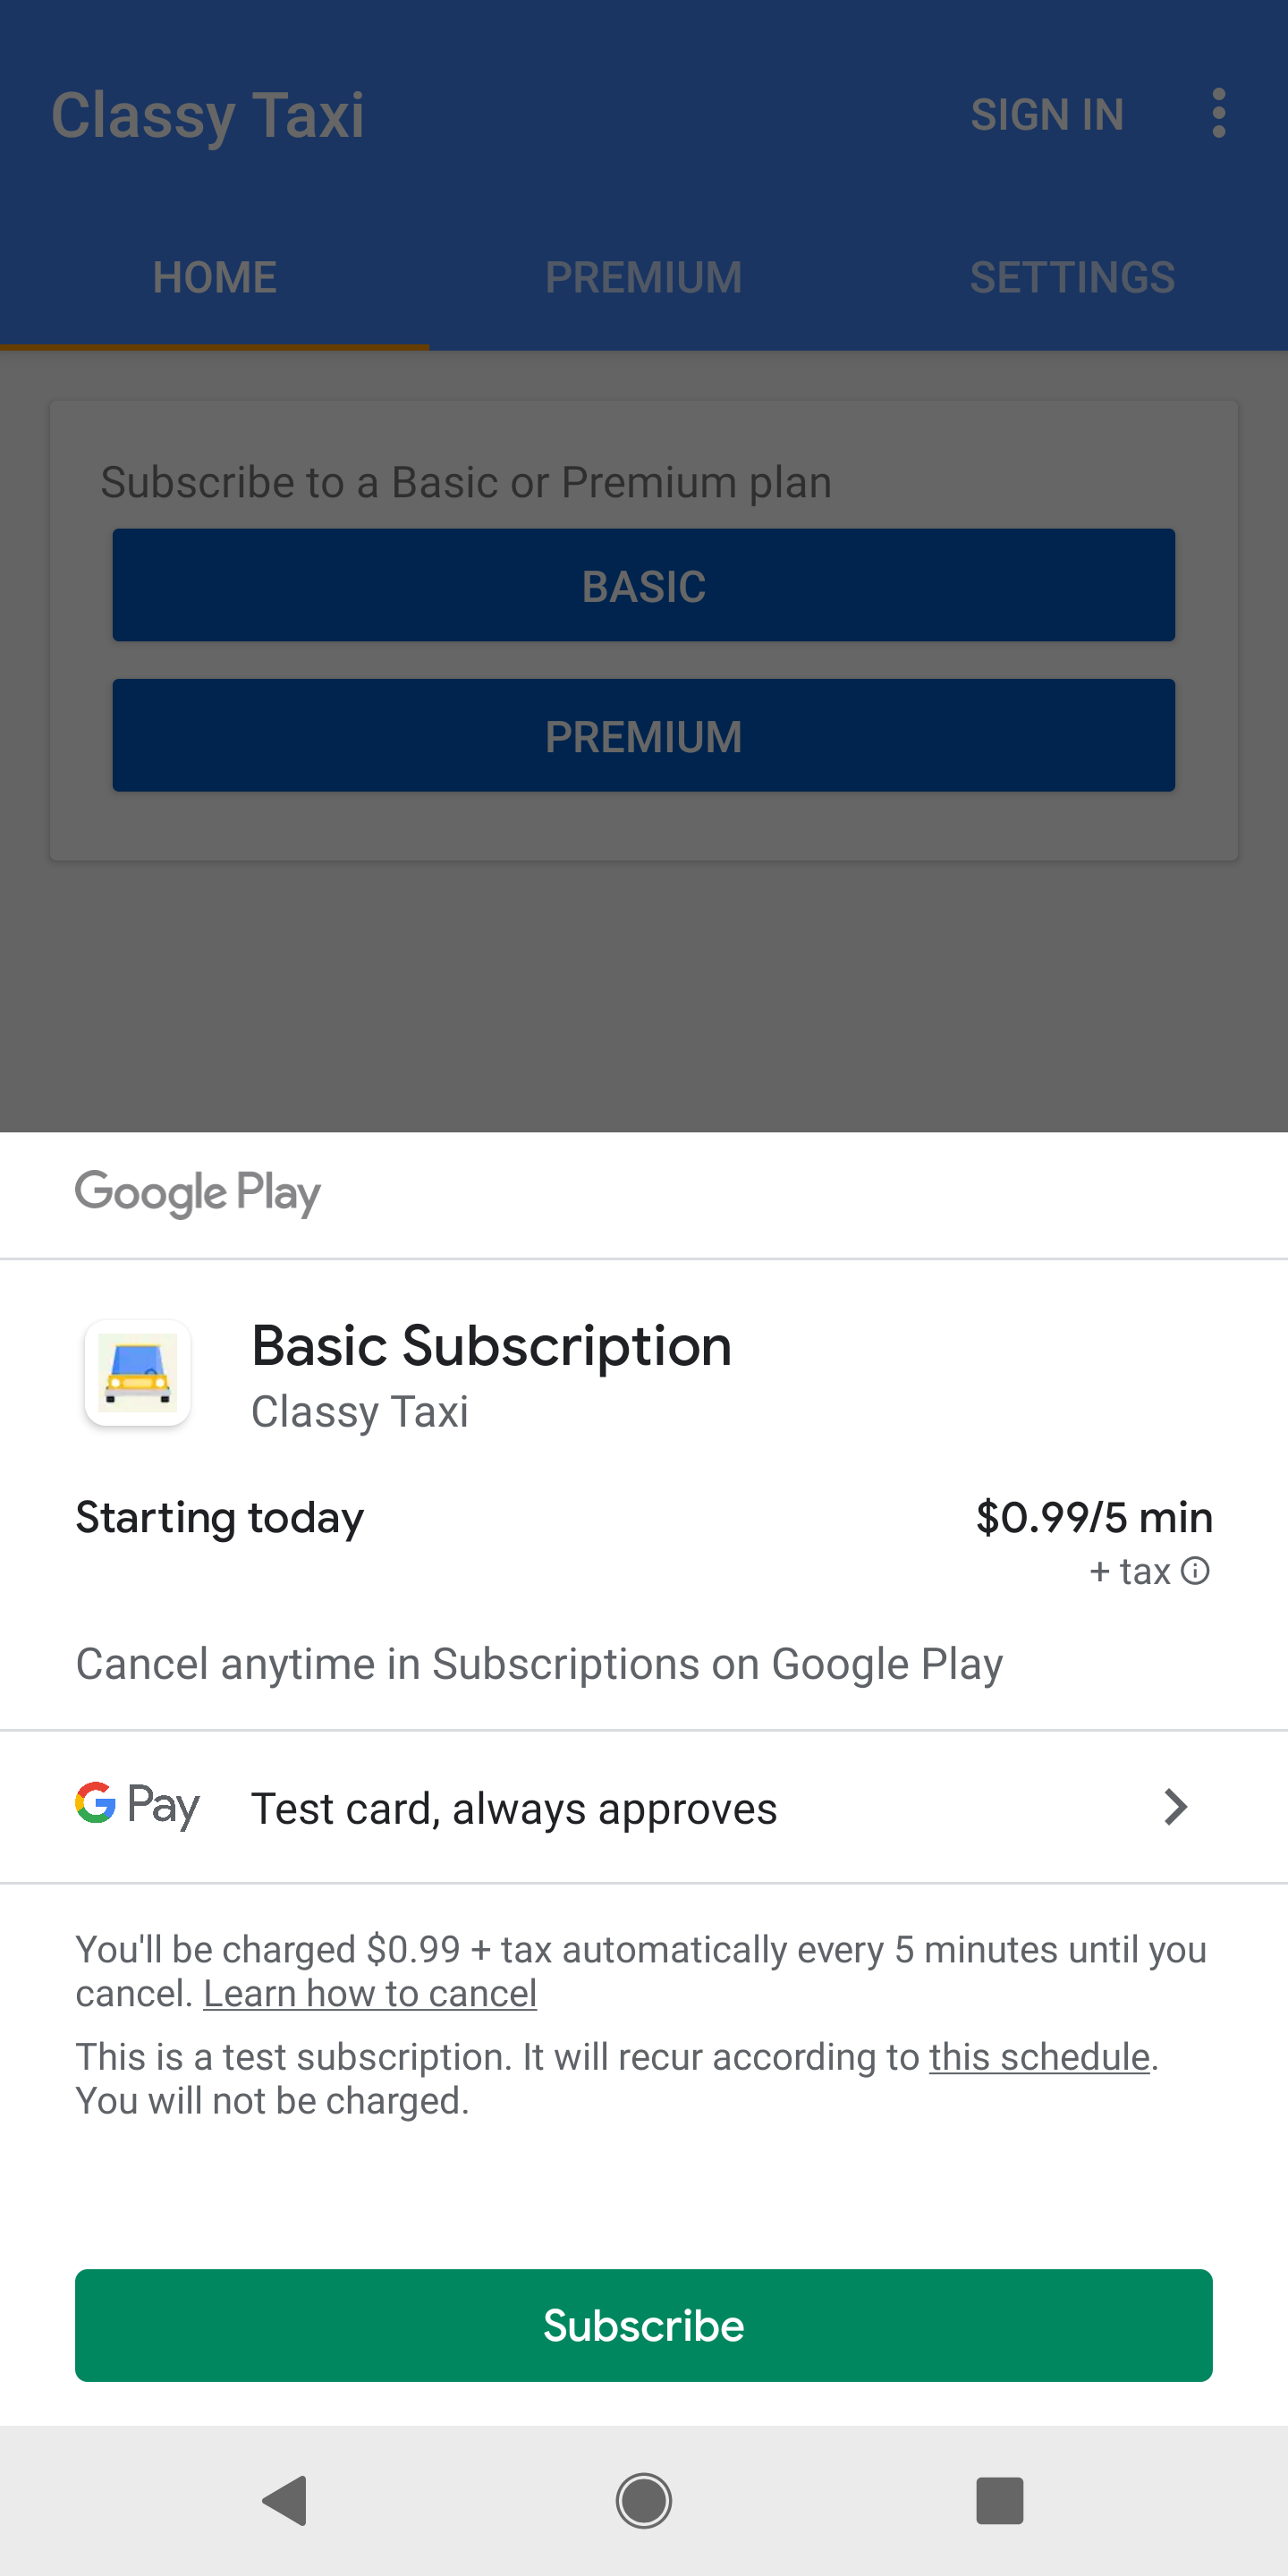 màn hình mua hàng trên Google Play cho thấy gói thuê bao
            có thể mua